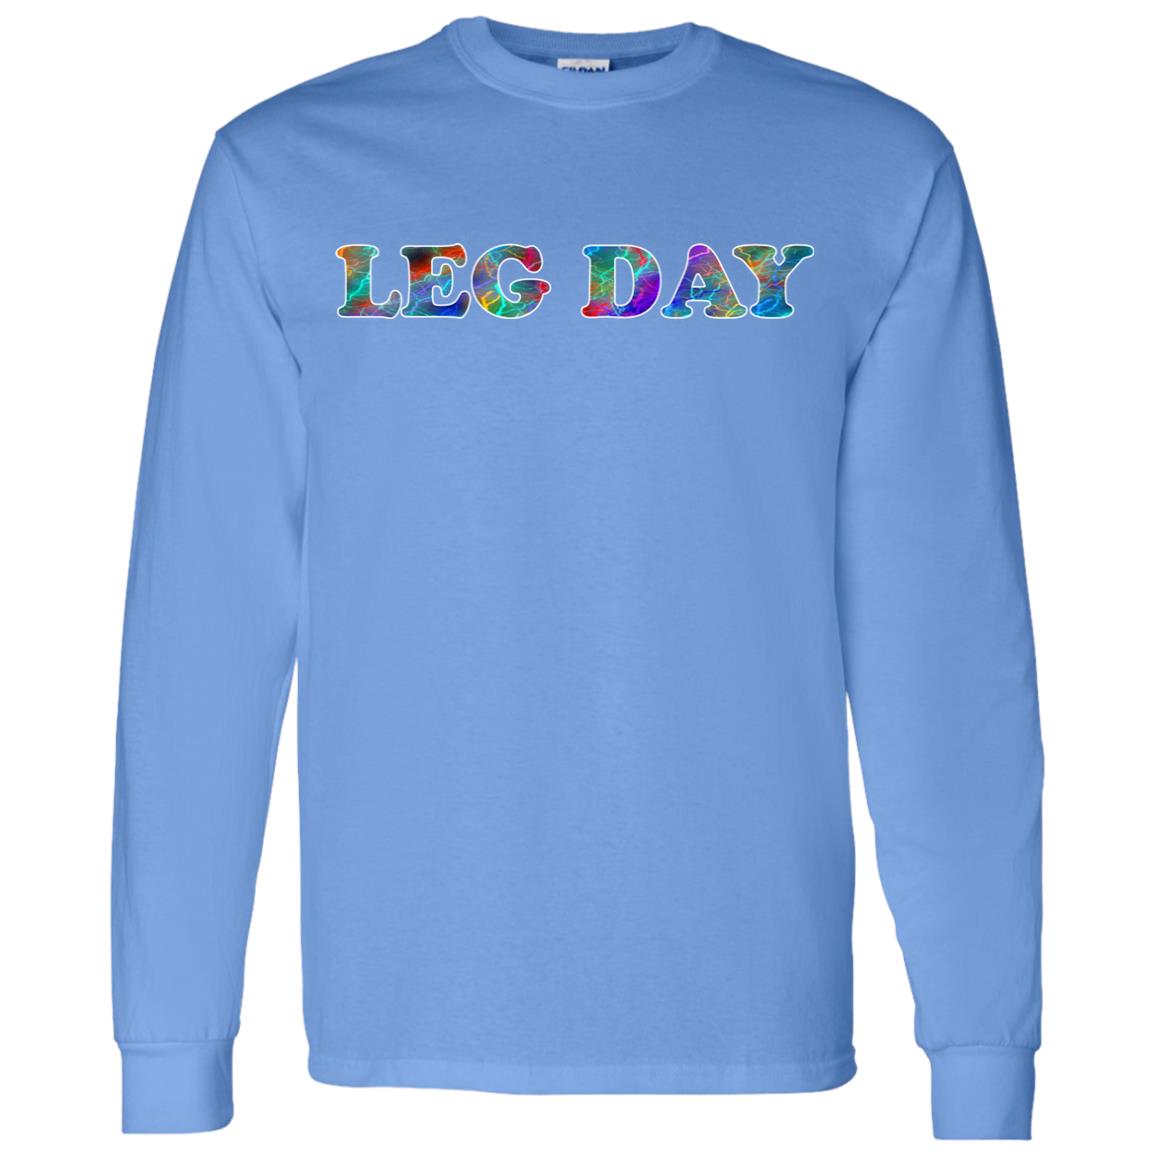 Leg Day Long Sleeve Sport T-Shirt